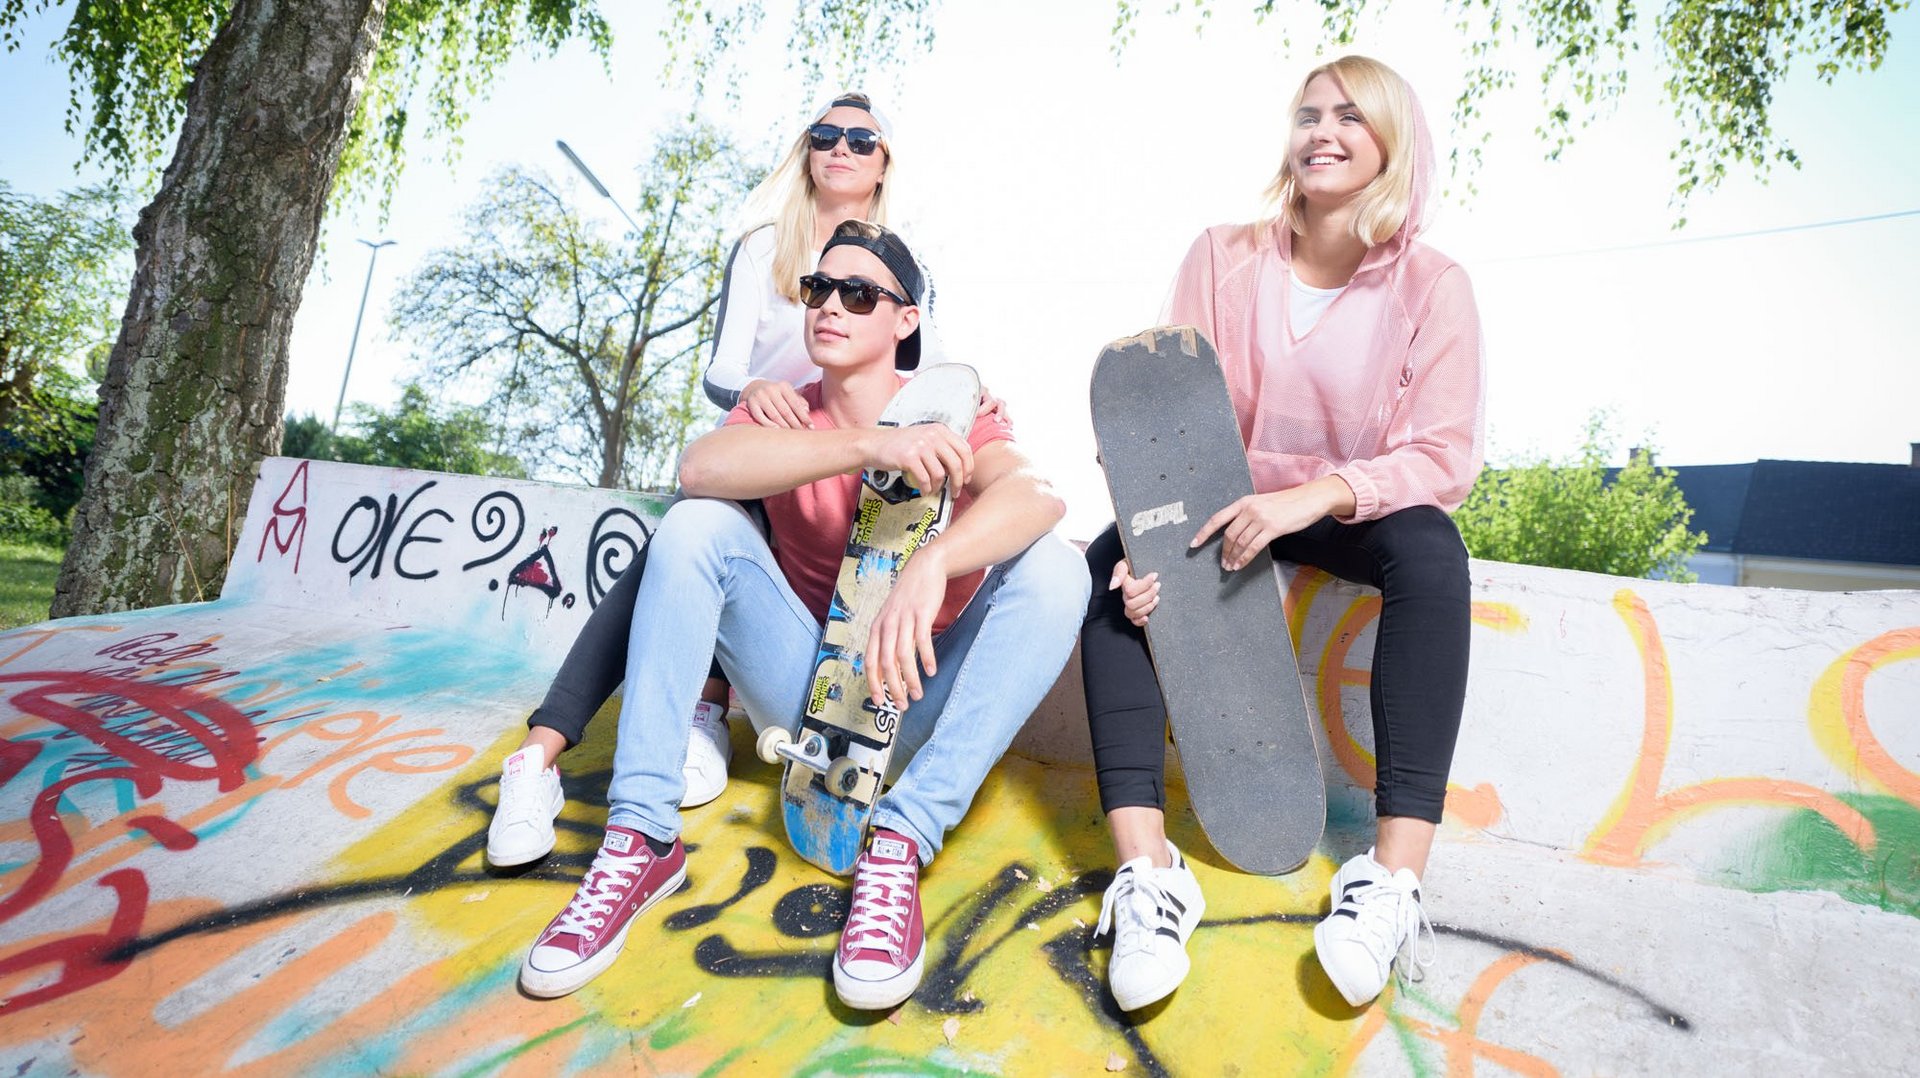 Jugendliche draußen mit Skateboard auf einer Skateboardrampe